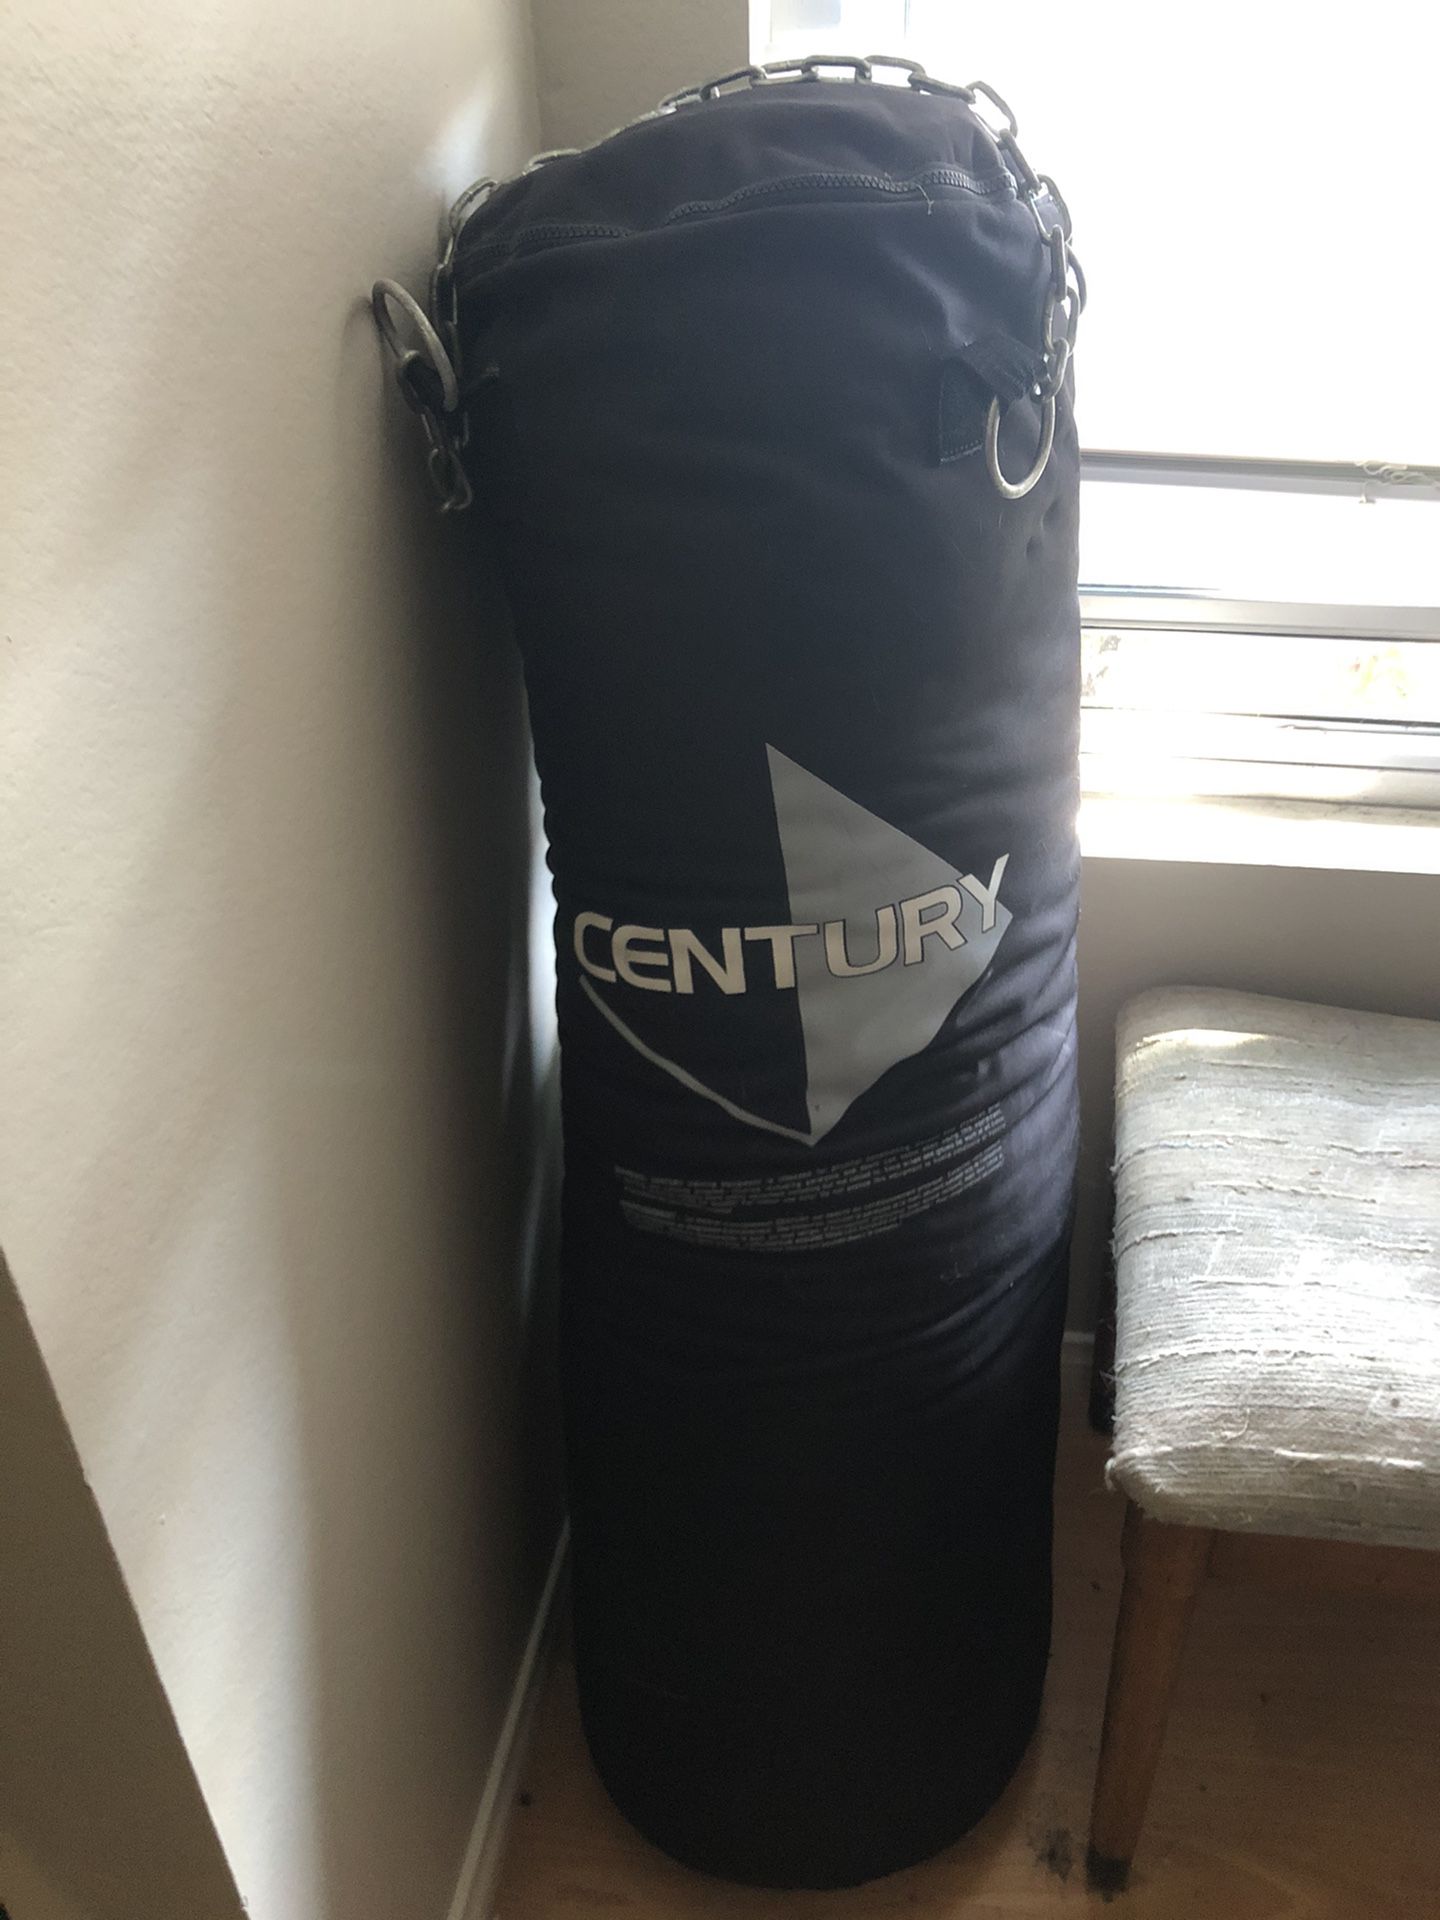 100 lb hanging punching bag